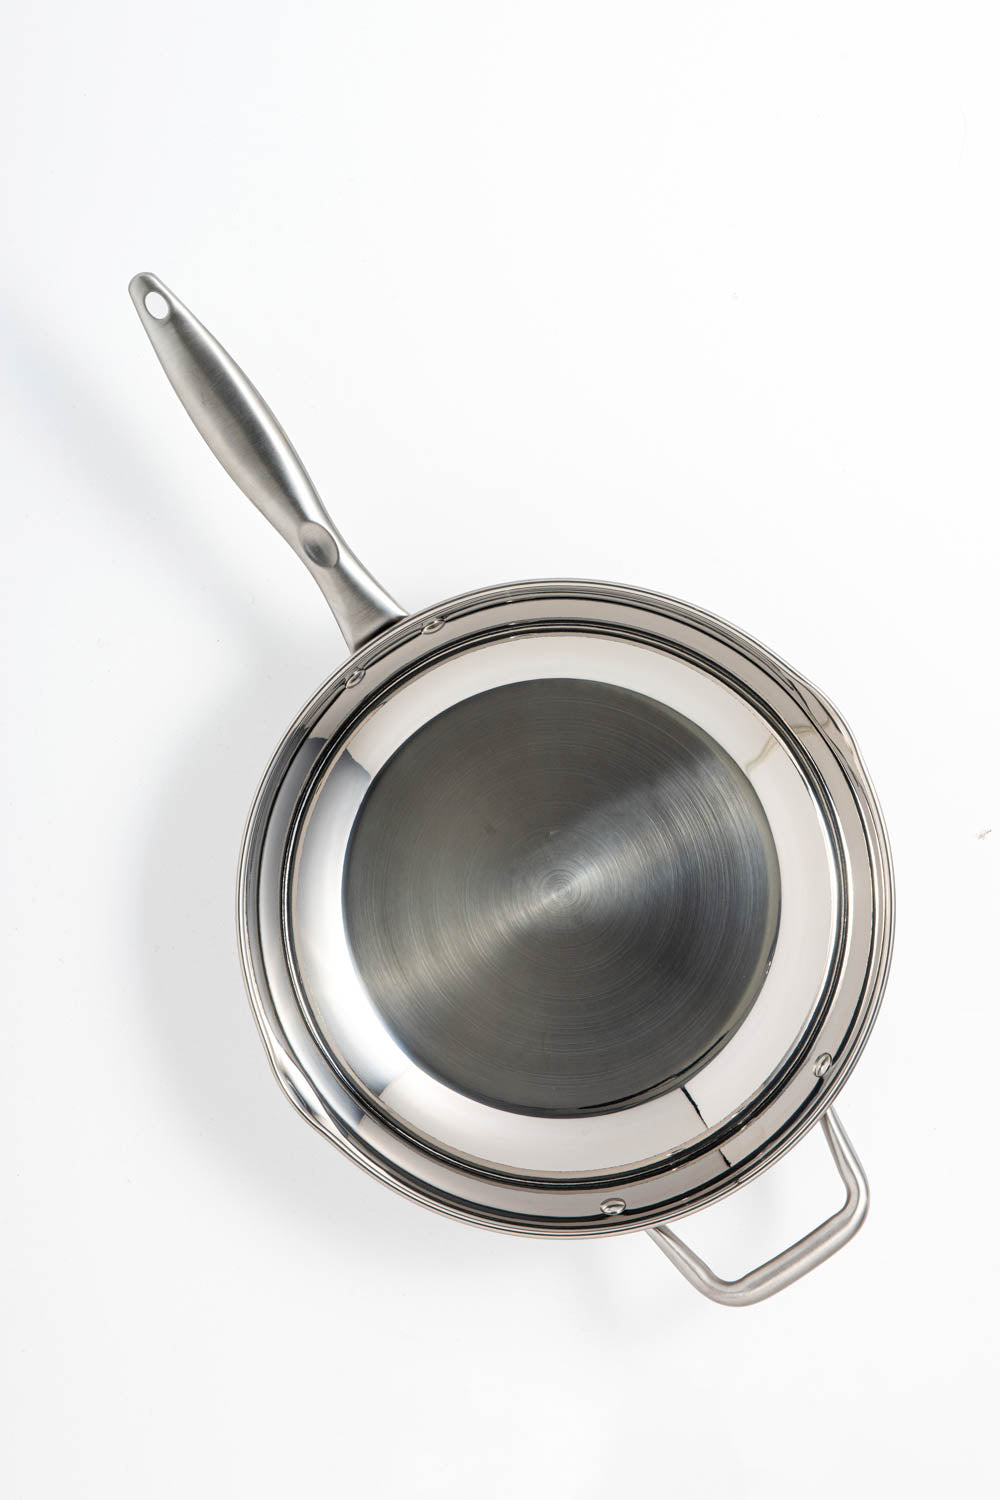 David Burke Regency 12 inch Fry Pan w/ Pour Spouts + Side Helper Handle